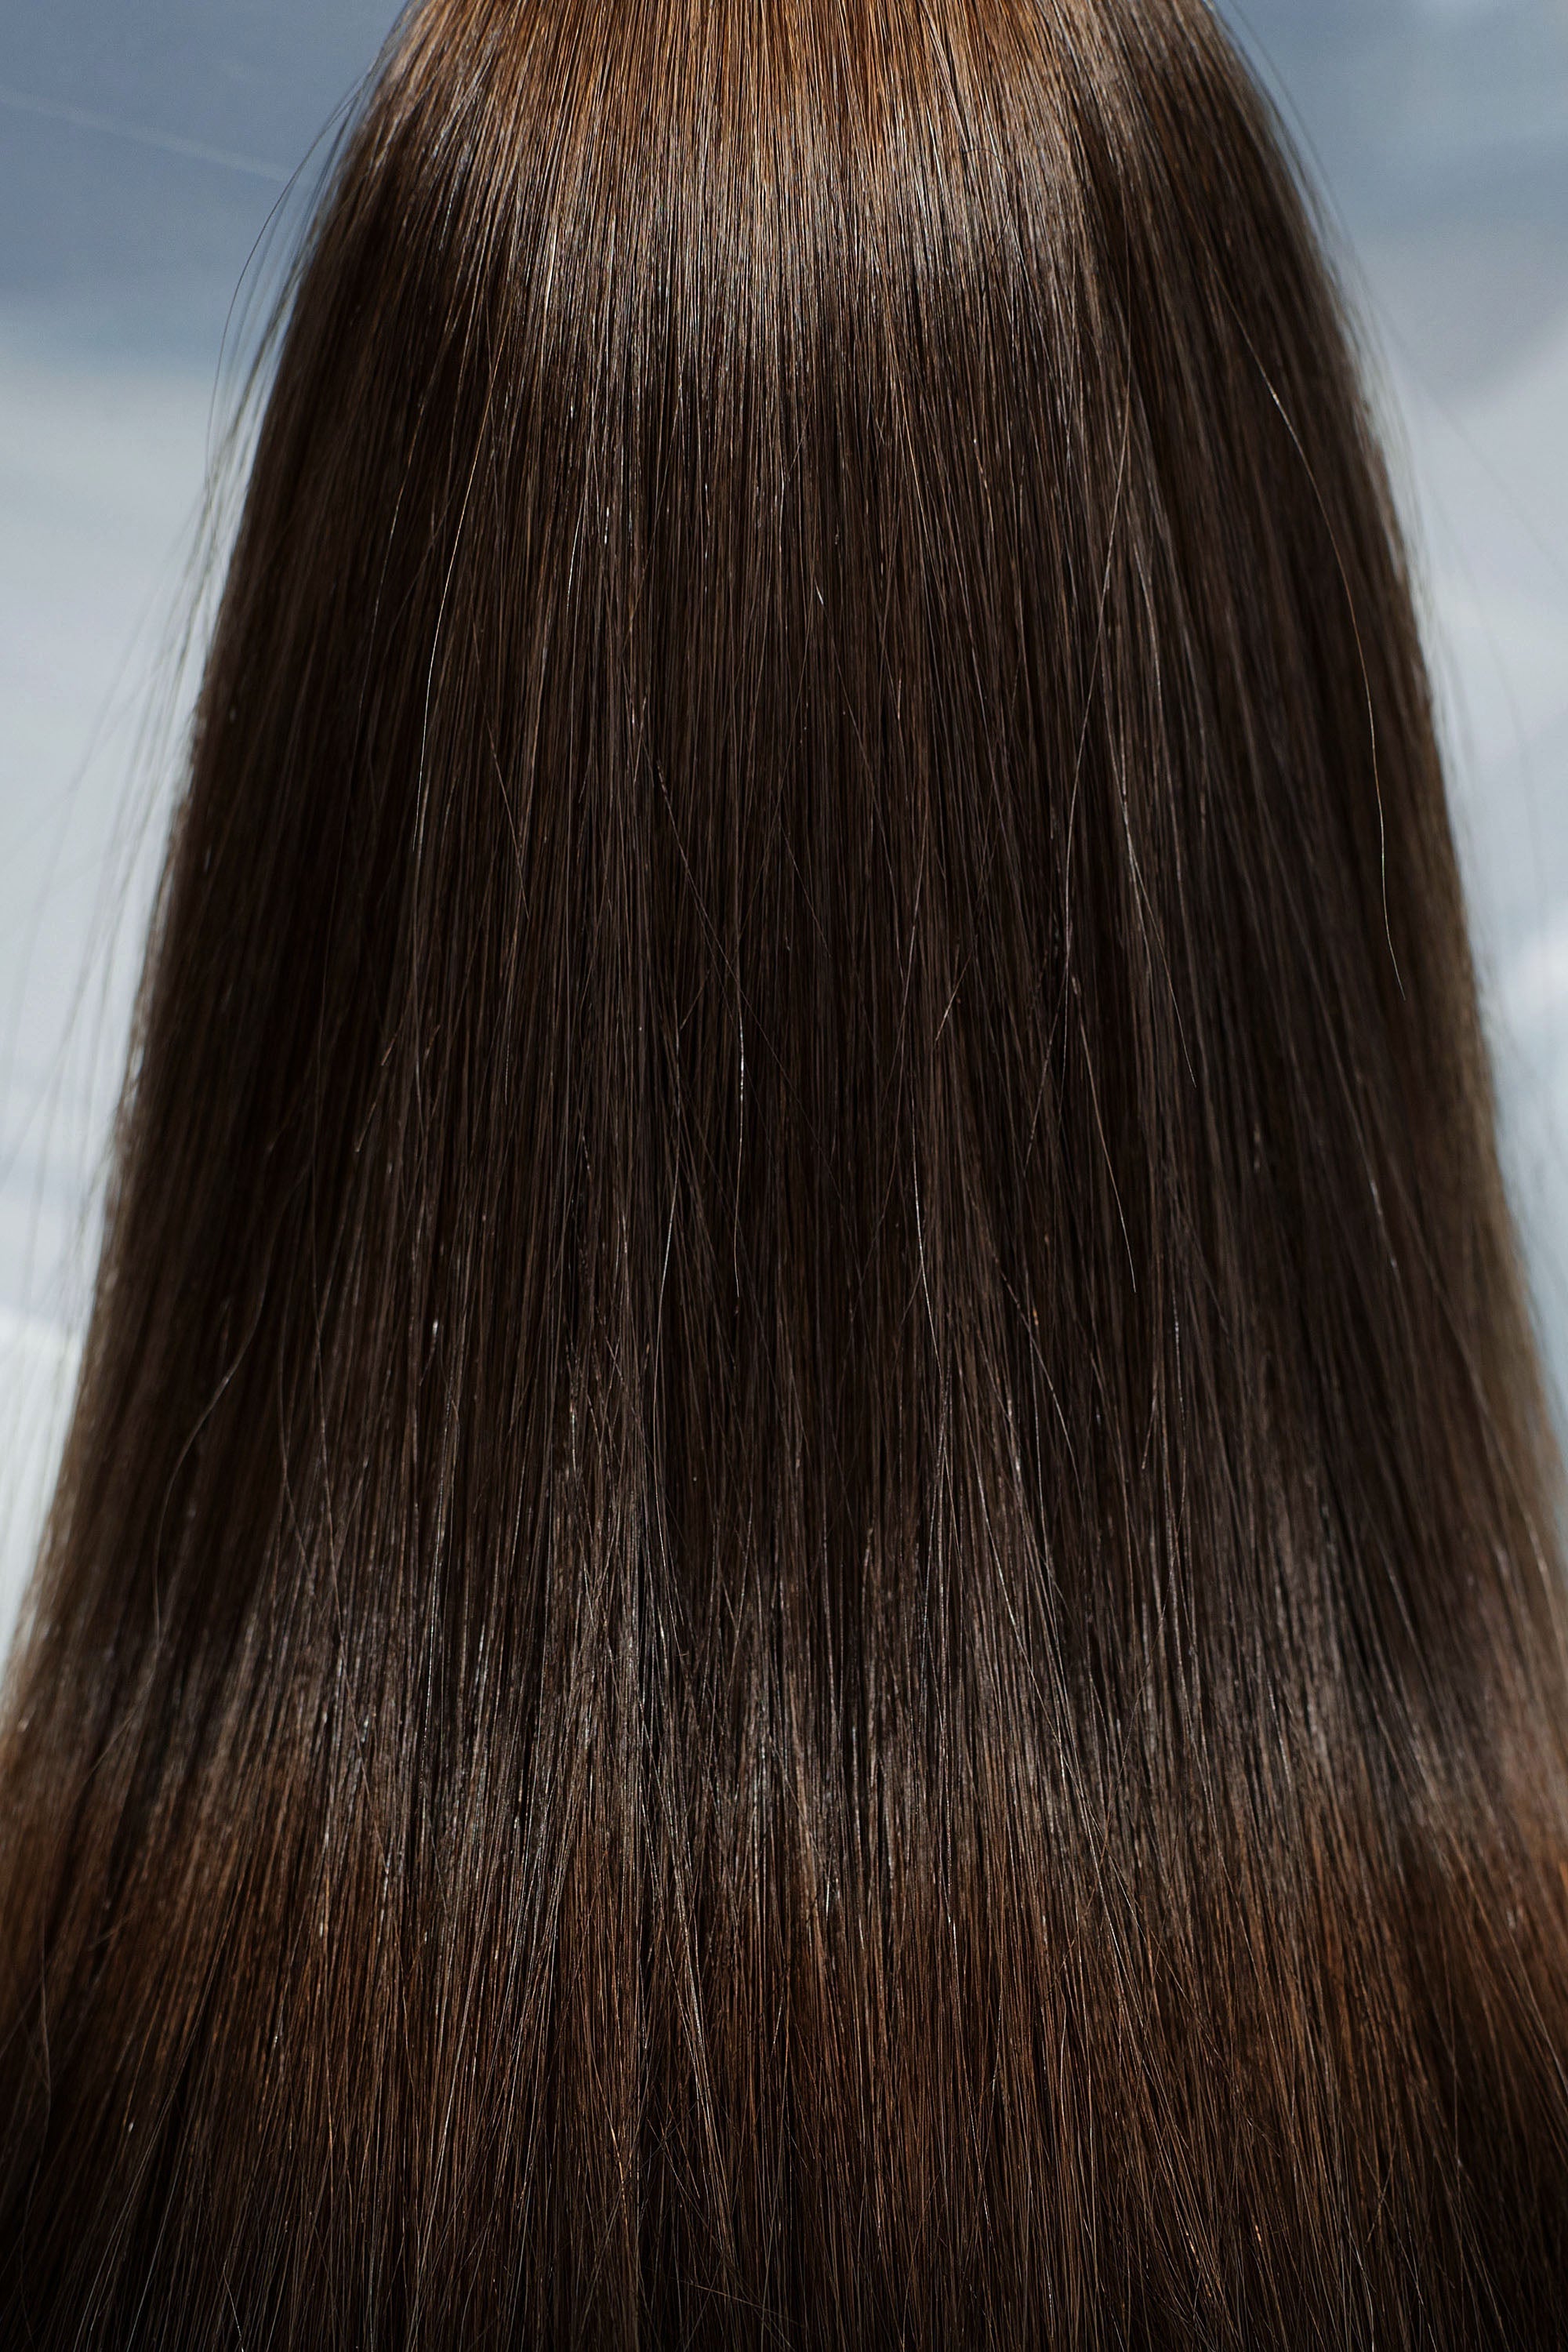 Behair professional Bulk hair "Premium" 18" (45cm) Natural Straight Light Brown #4 - 25g hair extensions